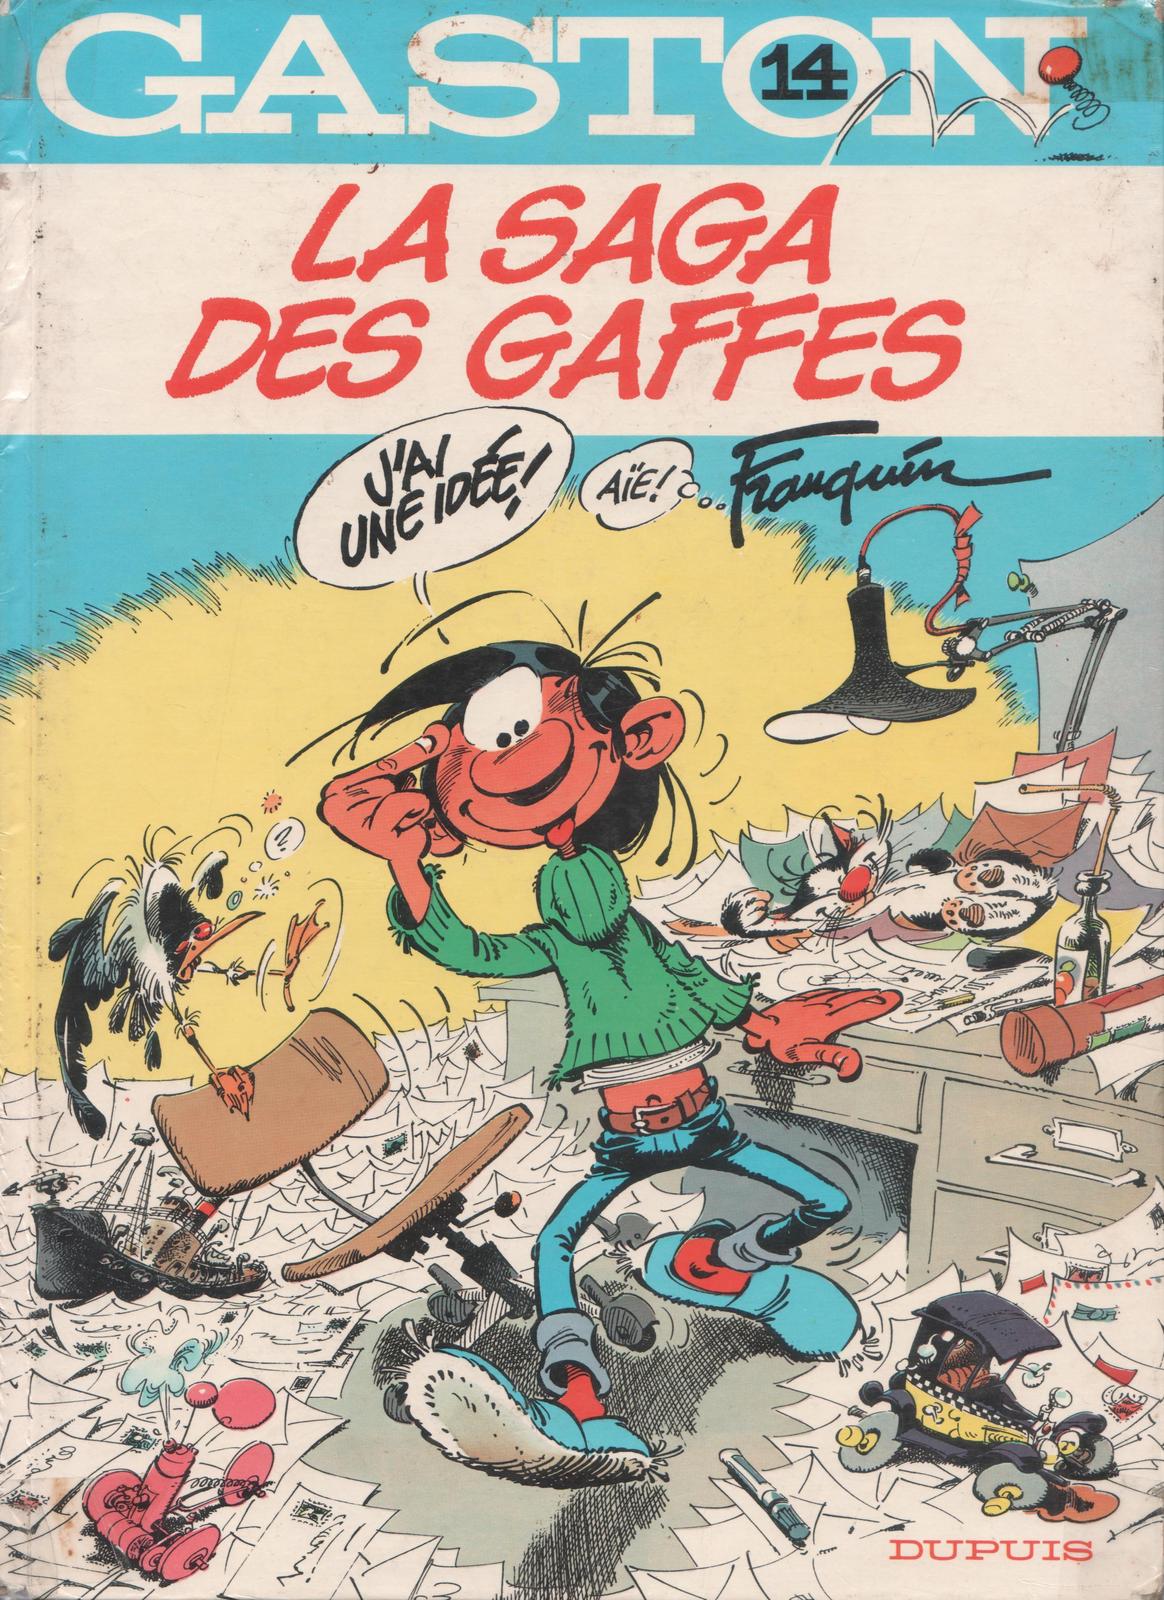 André Franquin: La saga des gaffes (French language, Dupuis)